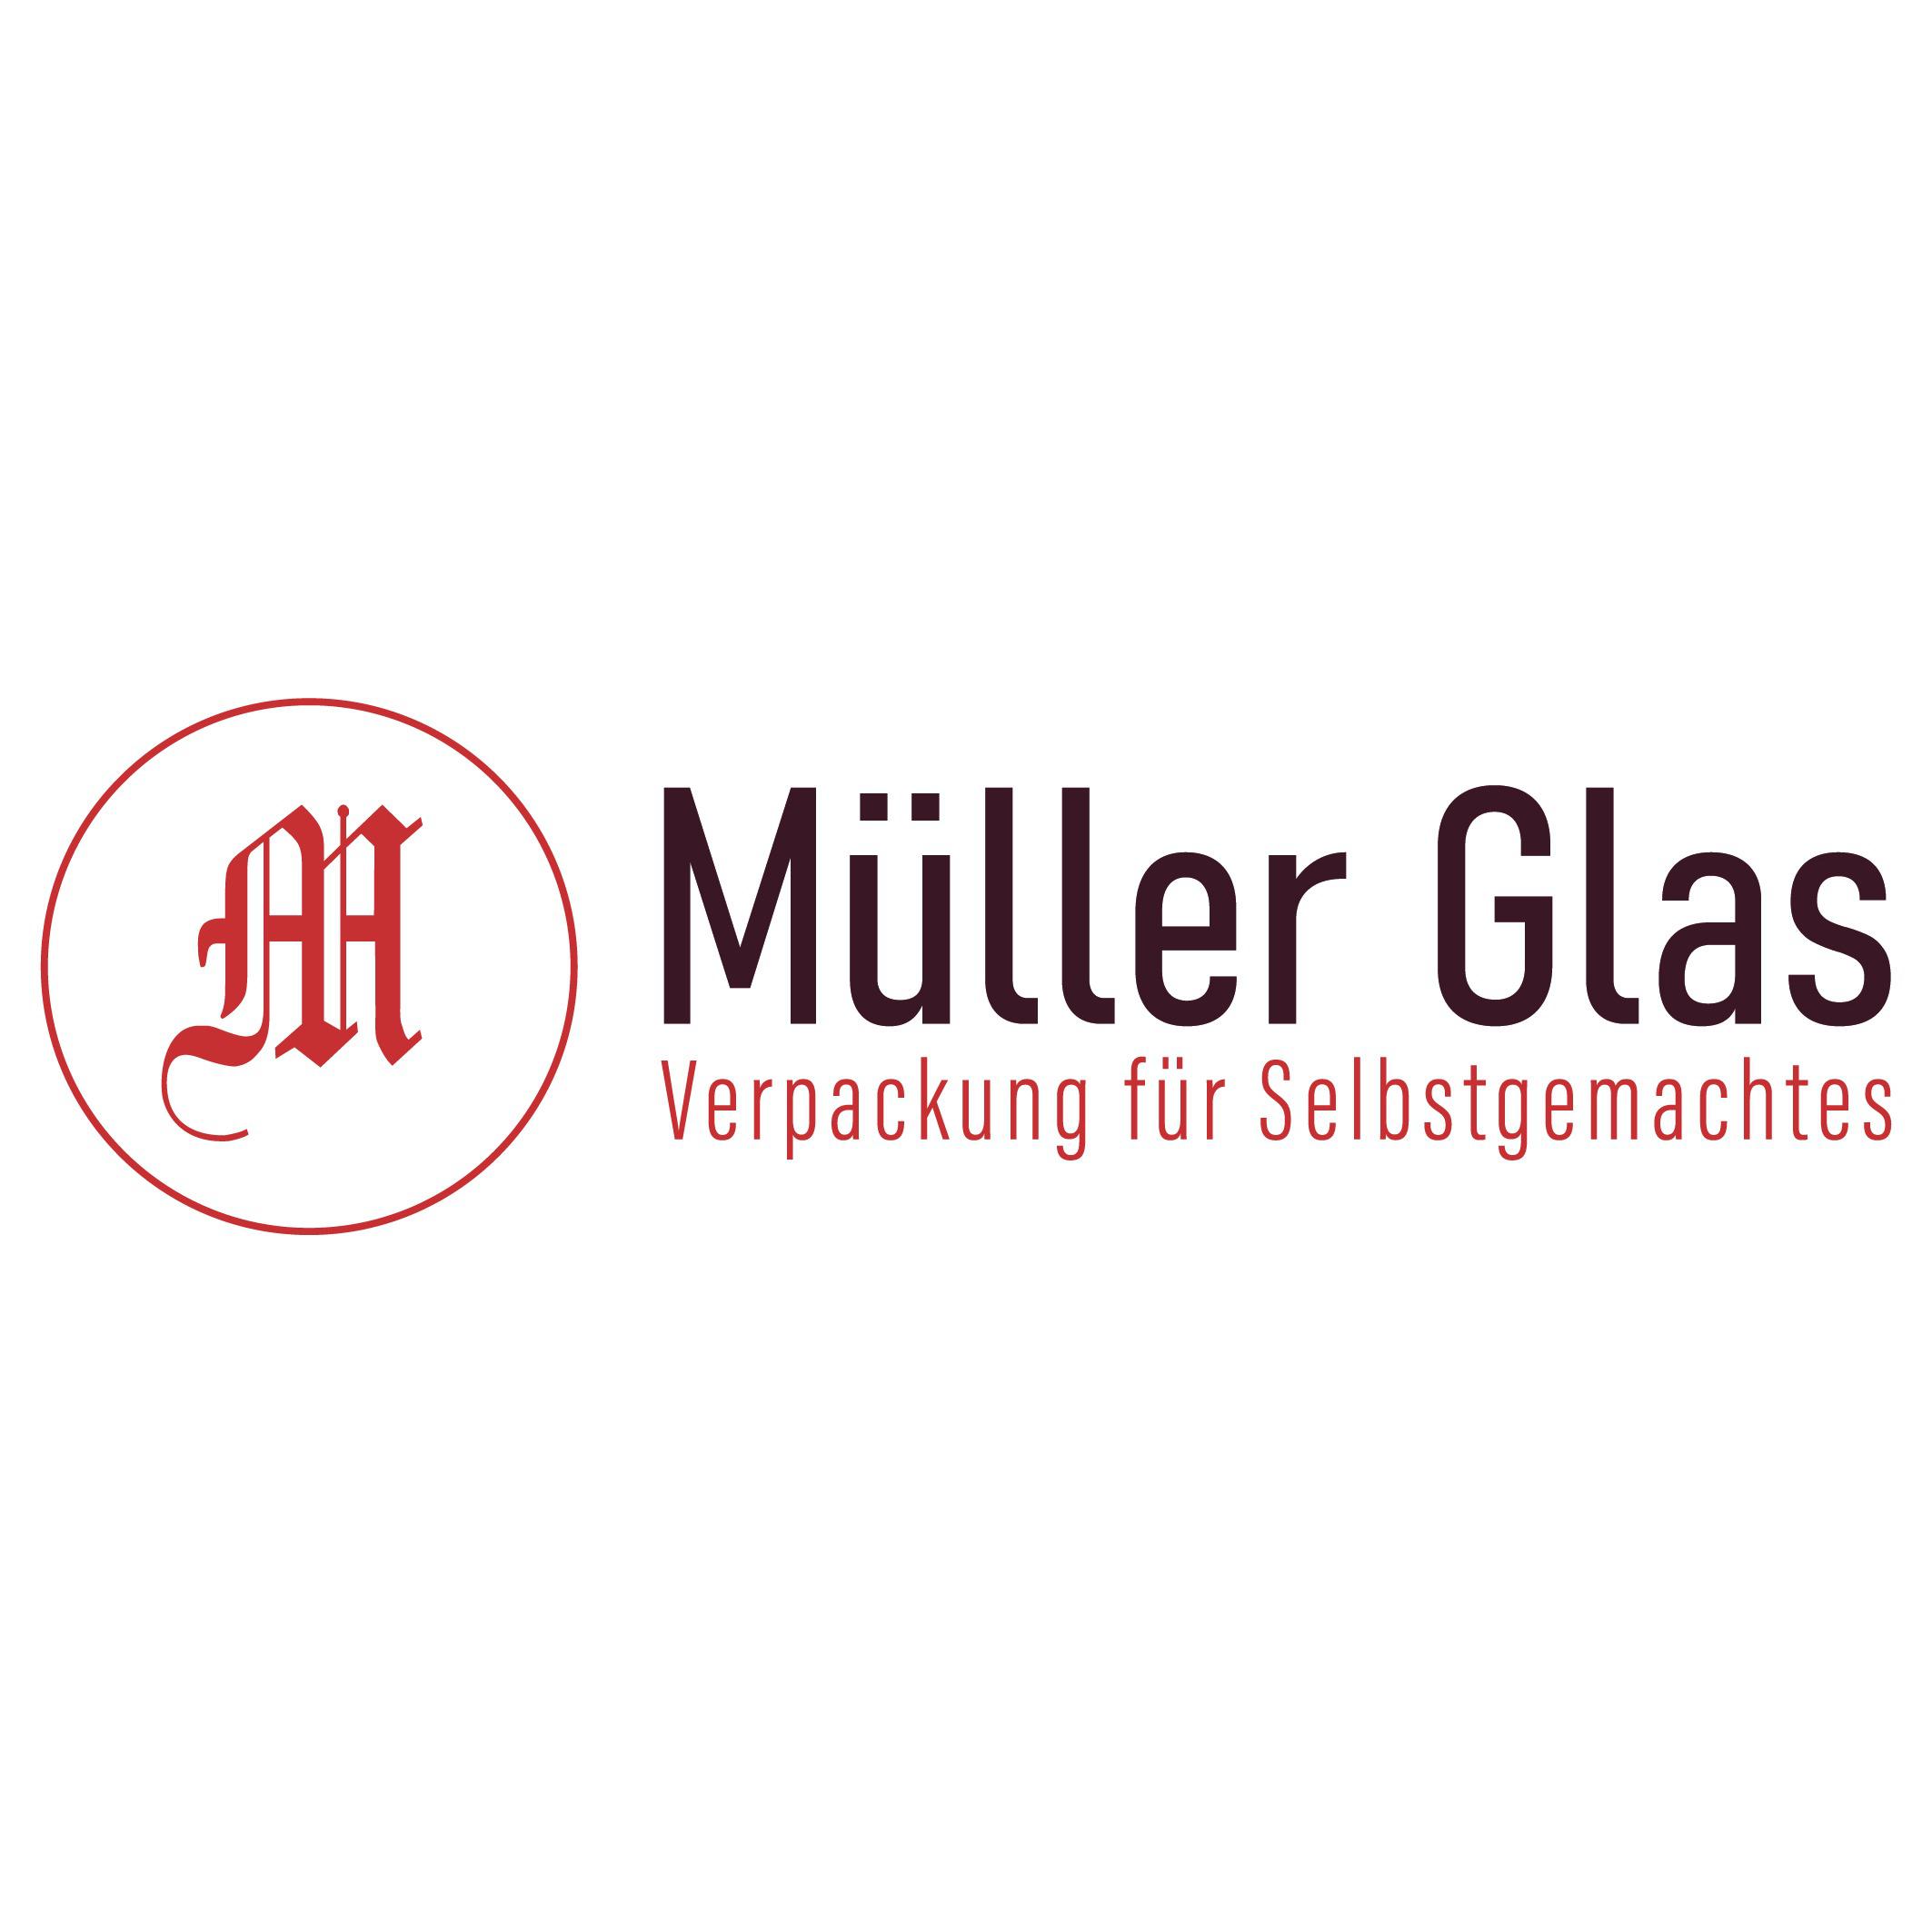 Müller Glas & Co Handelsges.m.b.H. in Innsbruck